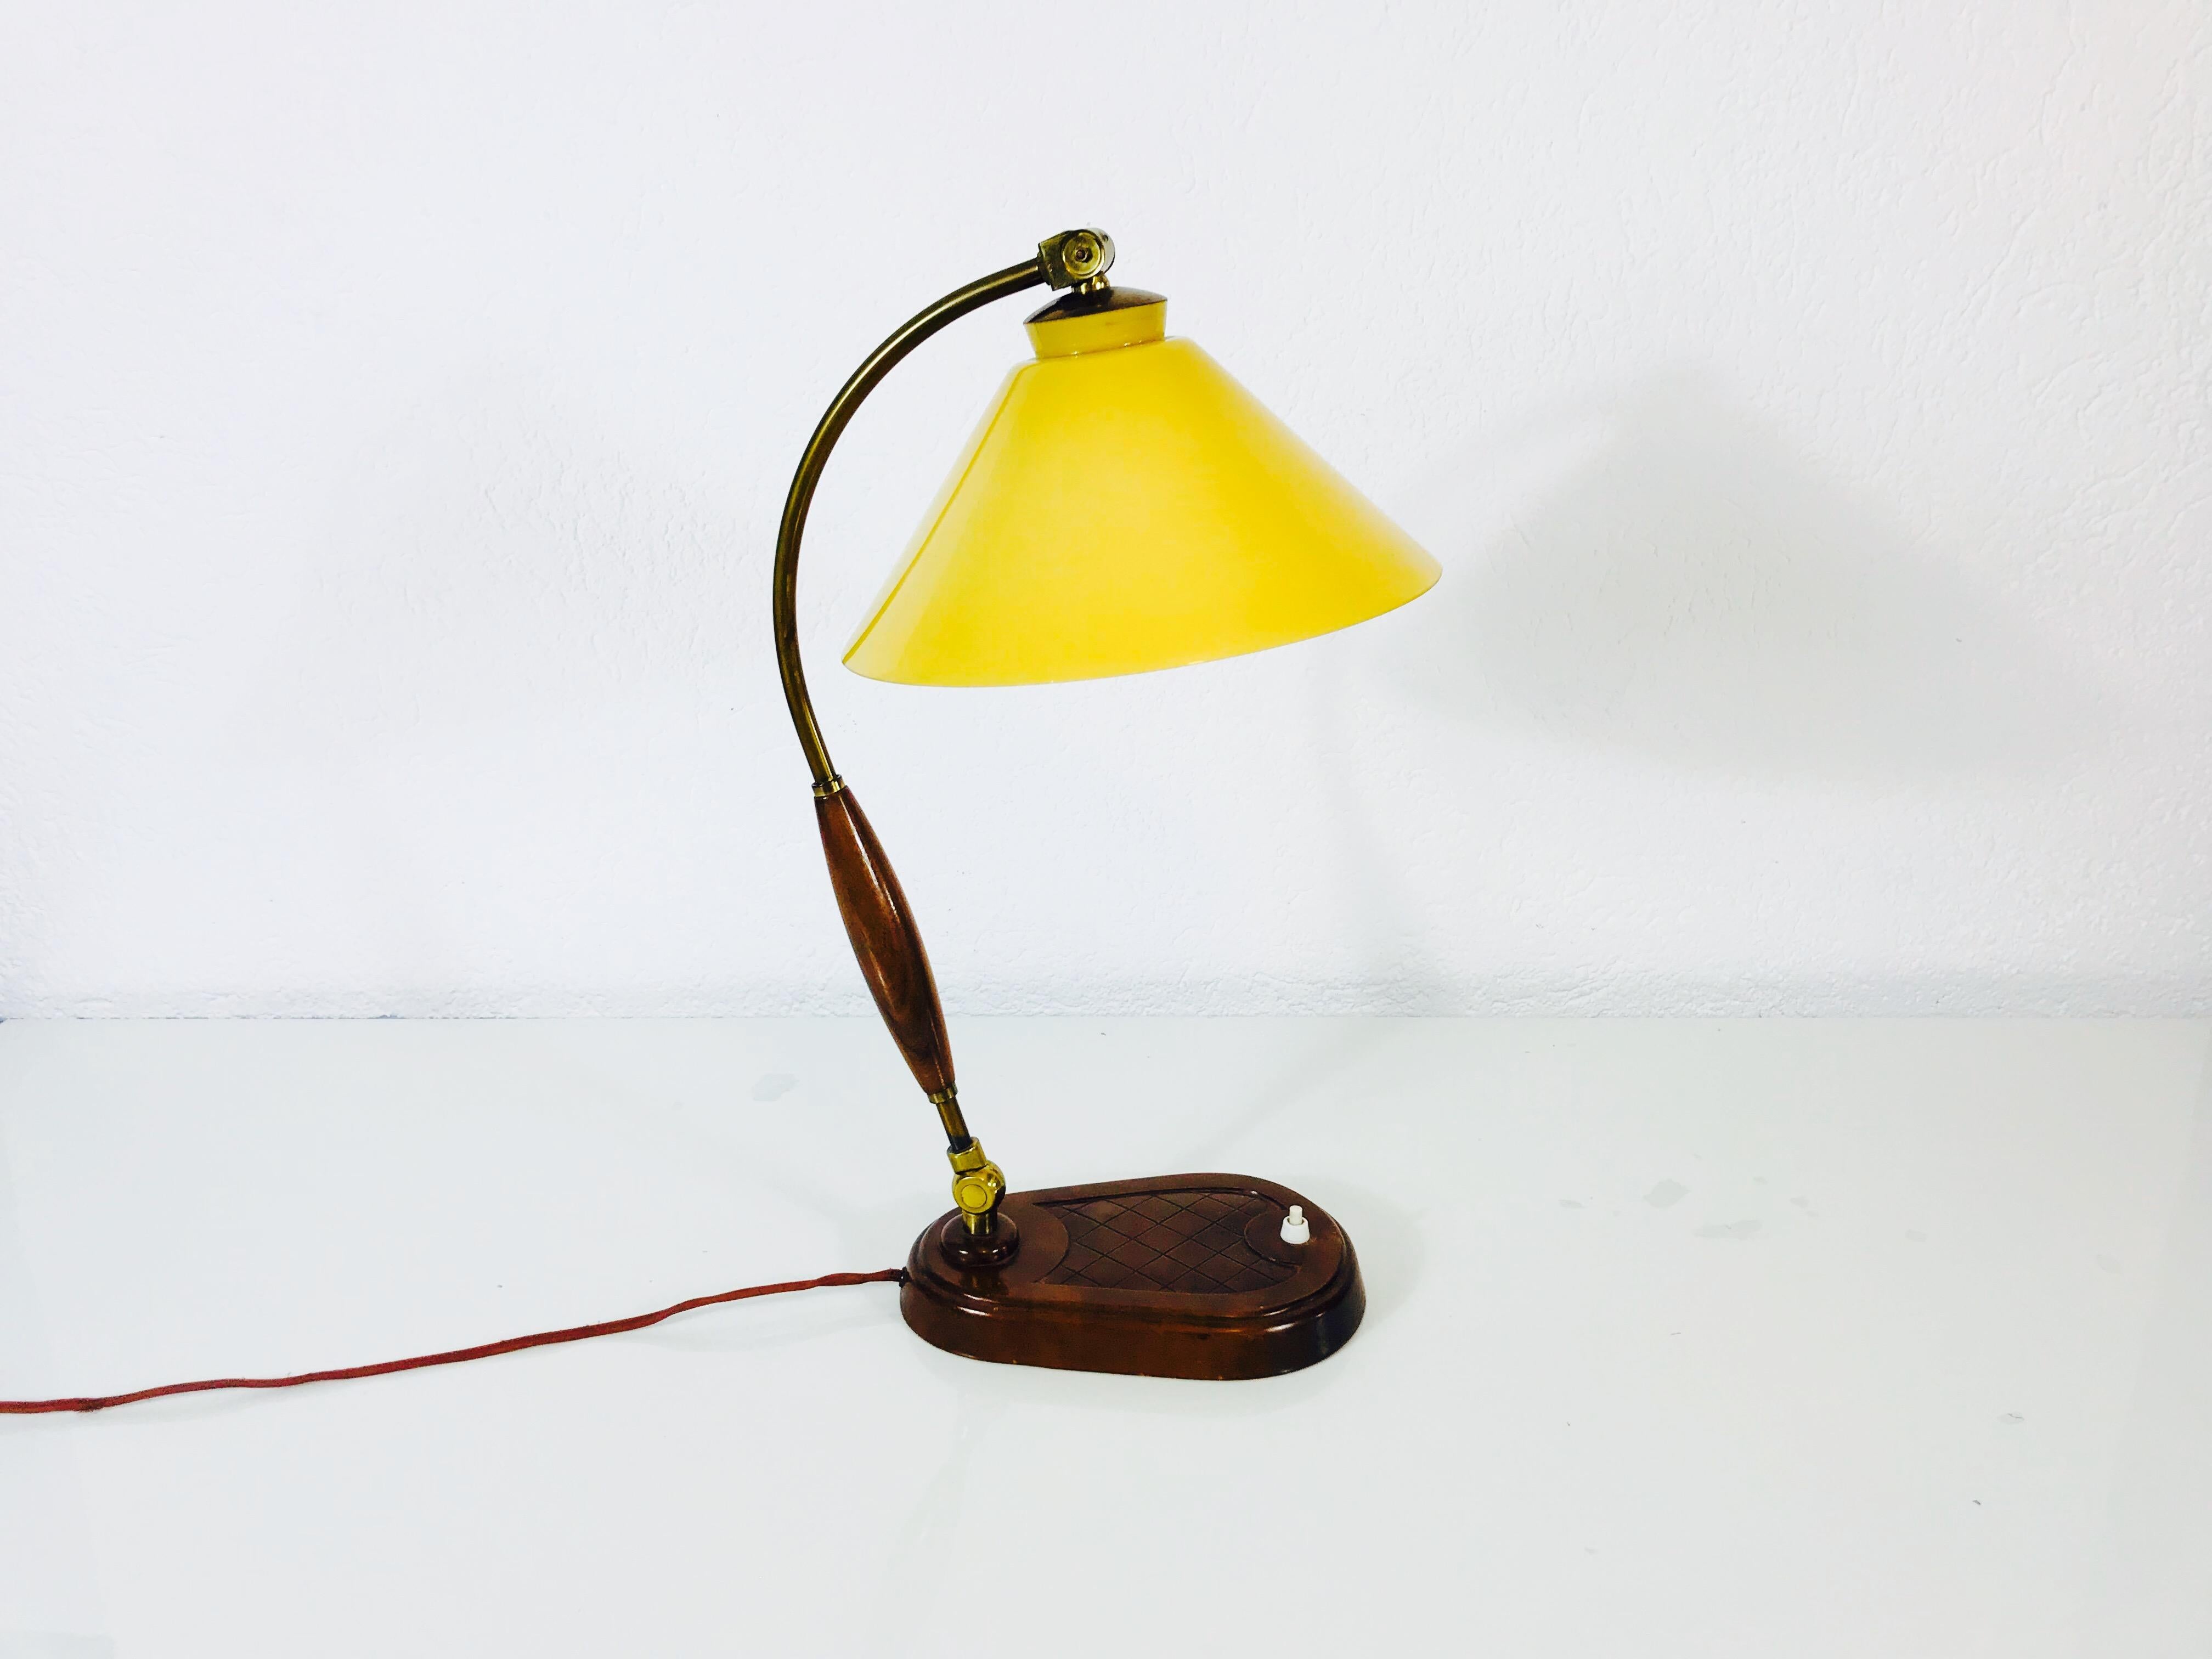 Une belle grande lampe de table fabriquée dans les années 1940. Il a un beau corps en bois avec des ornements en laiton. L'abat-jour en verre est de couleur jaune. La lampe de table a un beau design italien.

Le luminaire nécessite une ampoule E27.